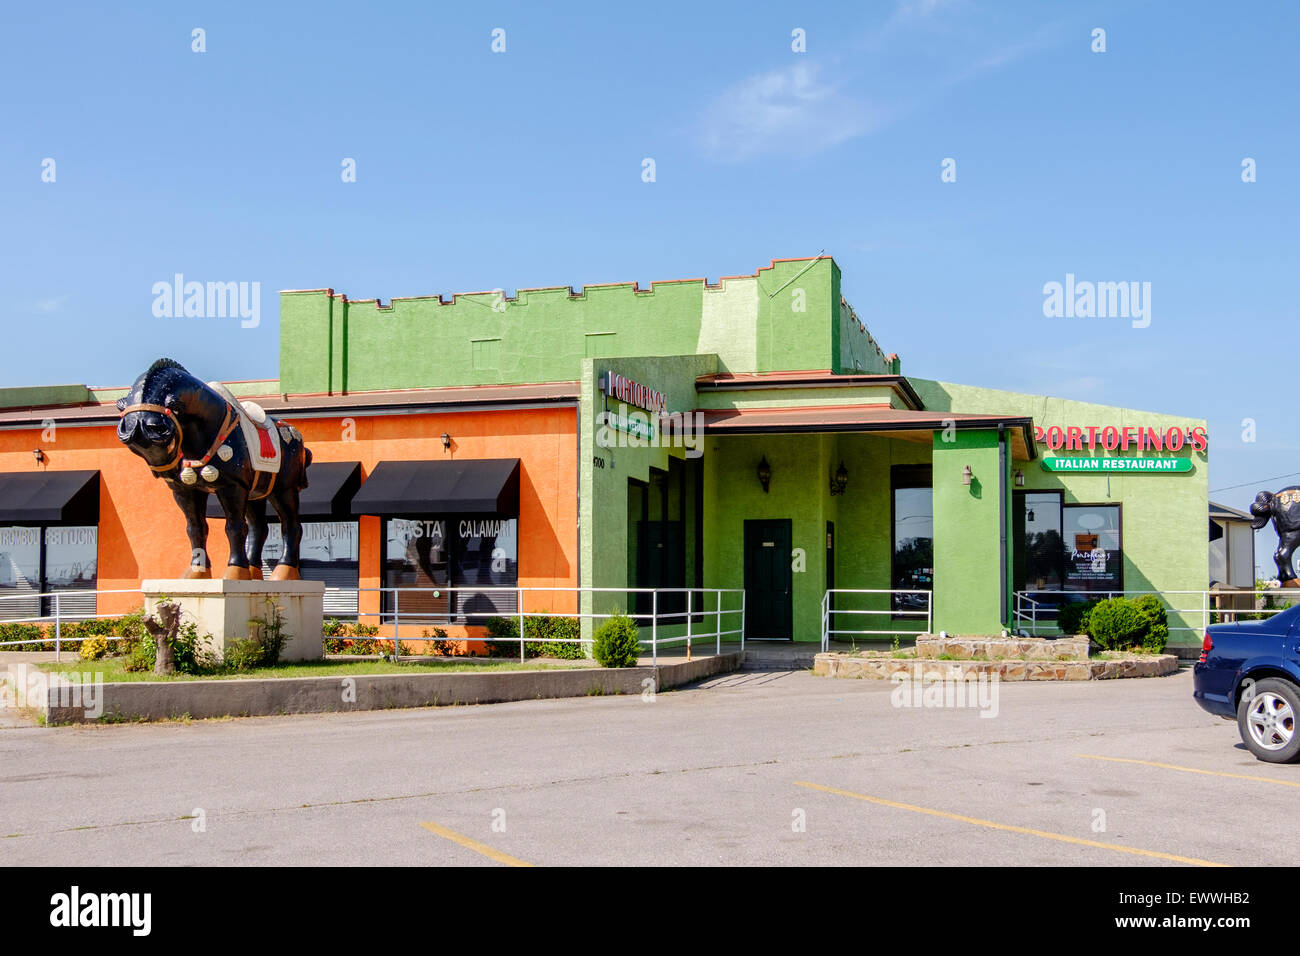 The exterior of Portofino's Italian Restaurante in Oklahoma City, Oklahoma, USA. Stock Photo